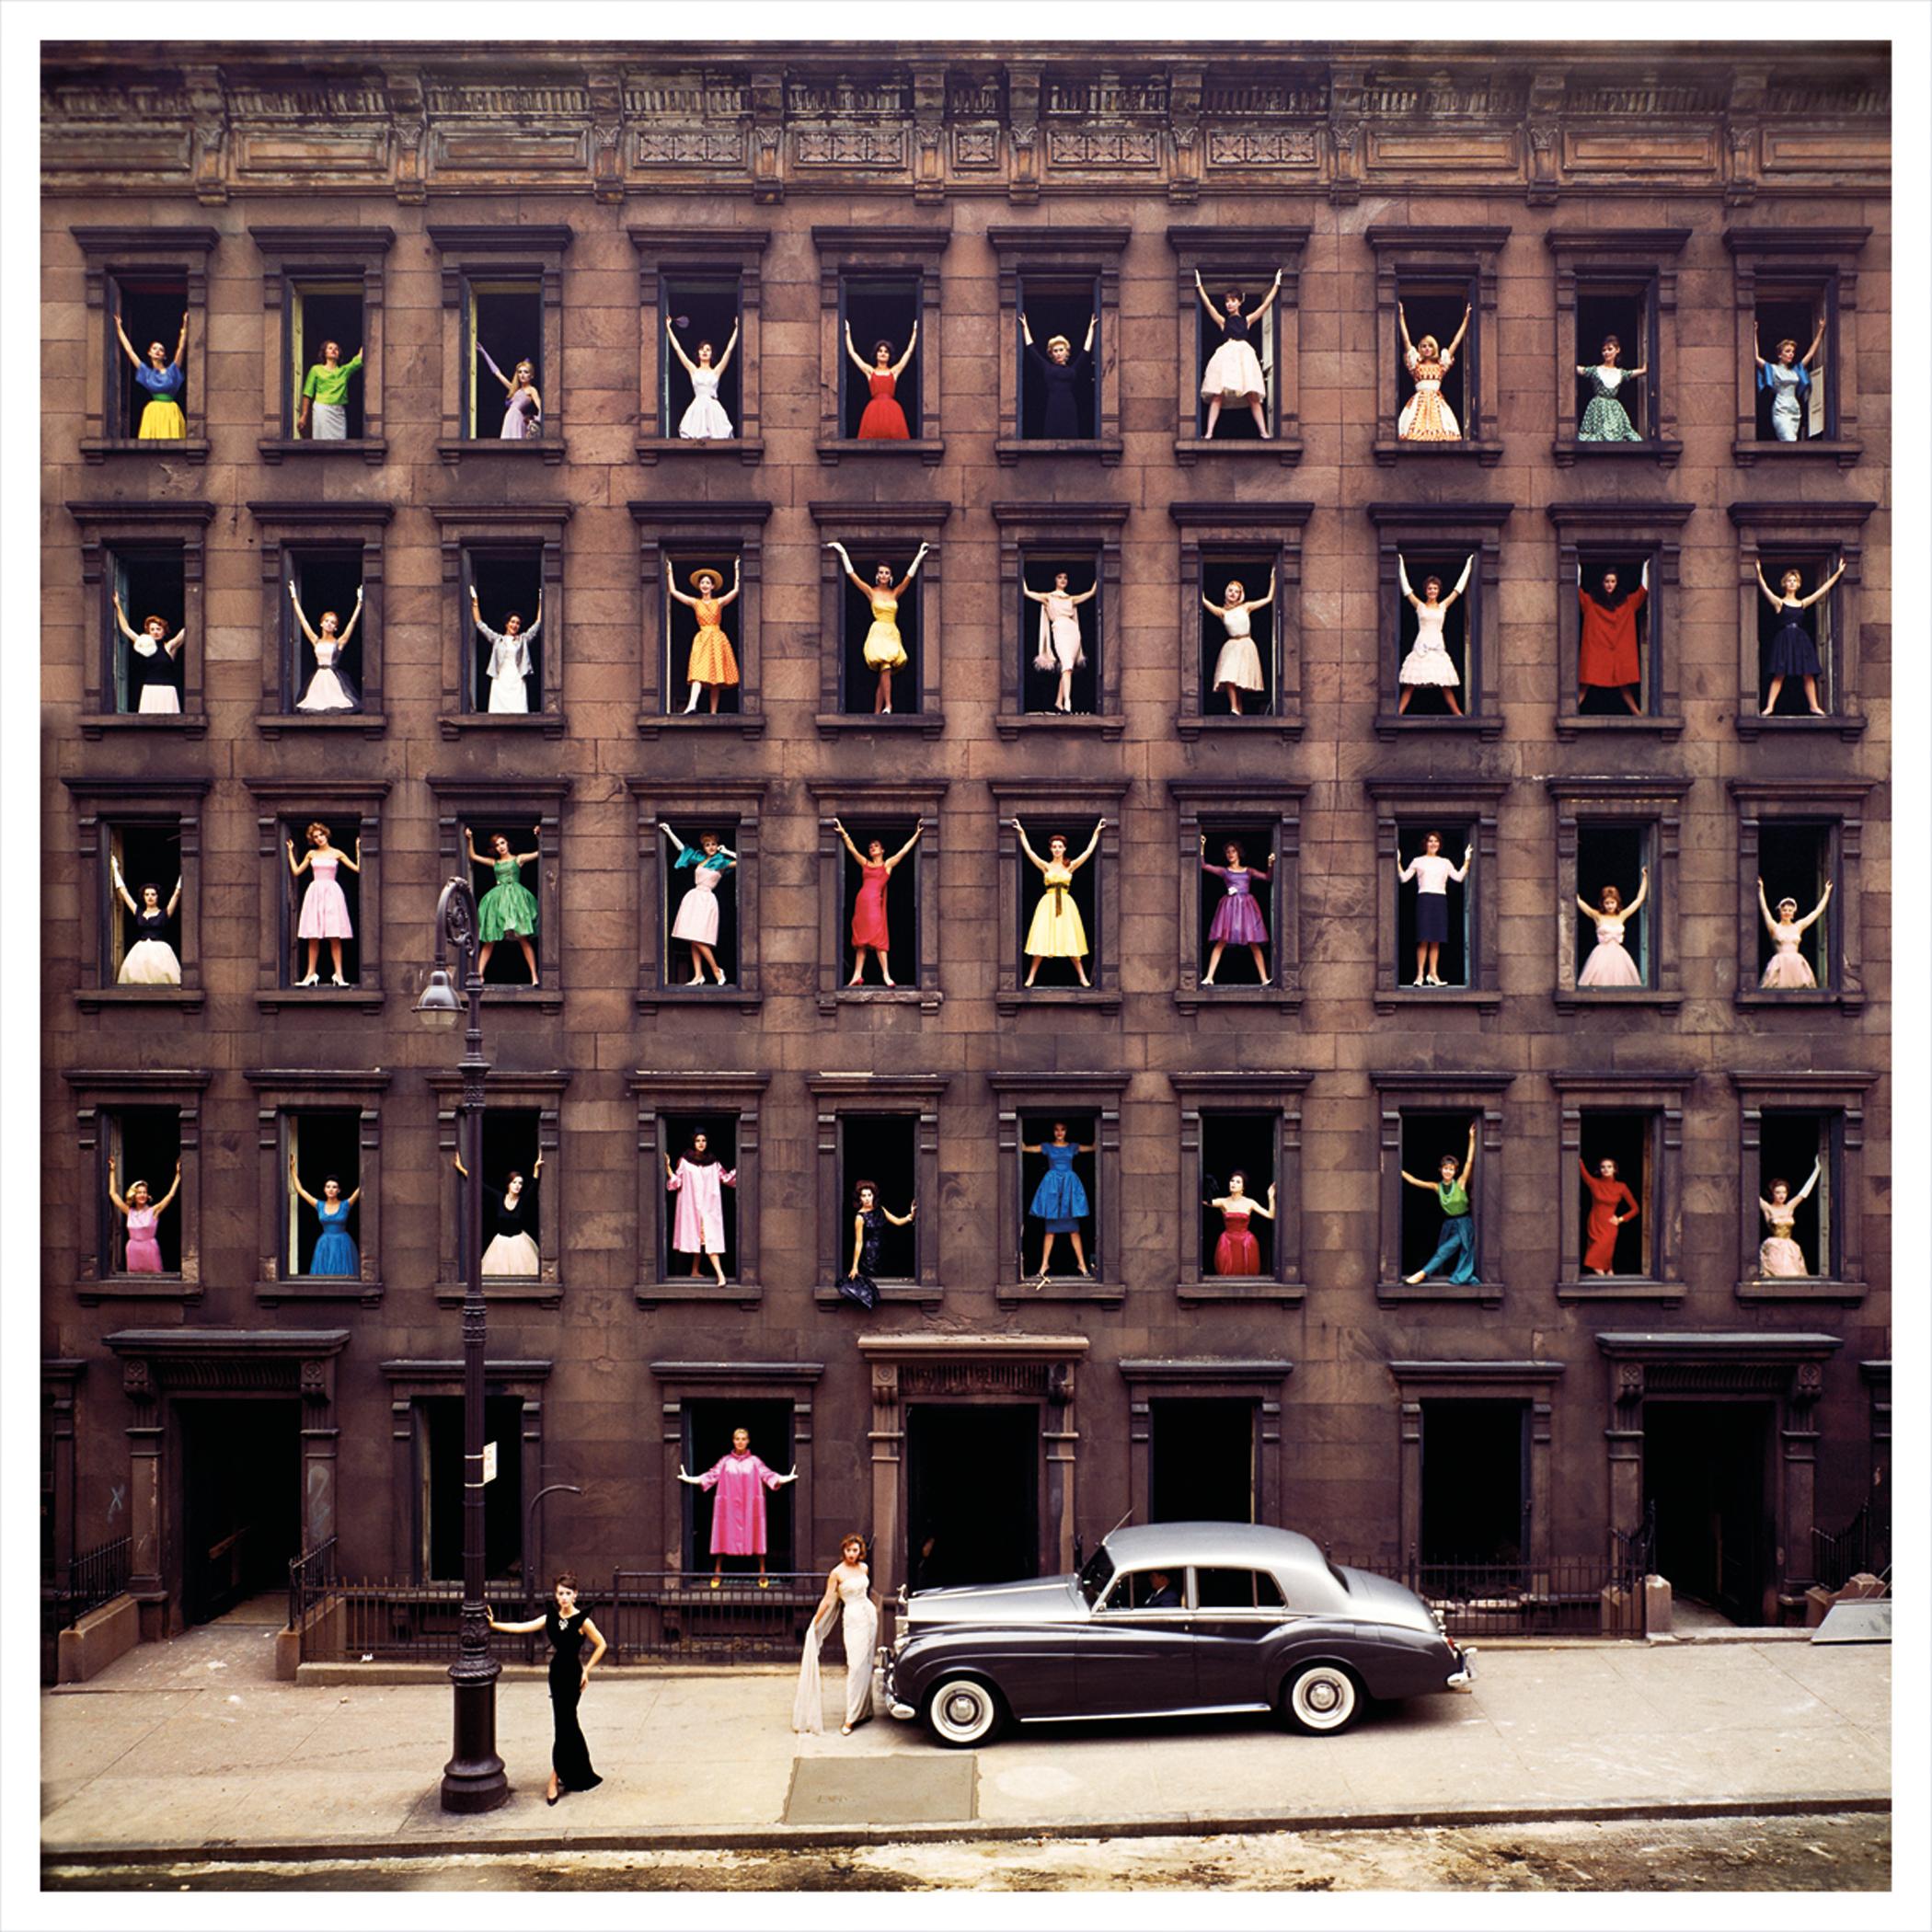 Ormond Gigli
Mädchen im Fenster, 1960 (später gedruckt)
Farbiger Kupplungsdruck
27 x 27 Zoll
Auflage von 44
Signiert, nummeriert und datiert vom Künstler

Ormond Gigli: Der Visionär hinter den "Girls in the Windows"
Ormond Gigli ist ein hoch